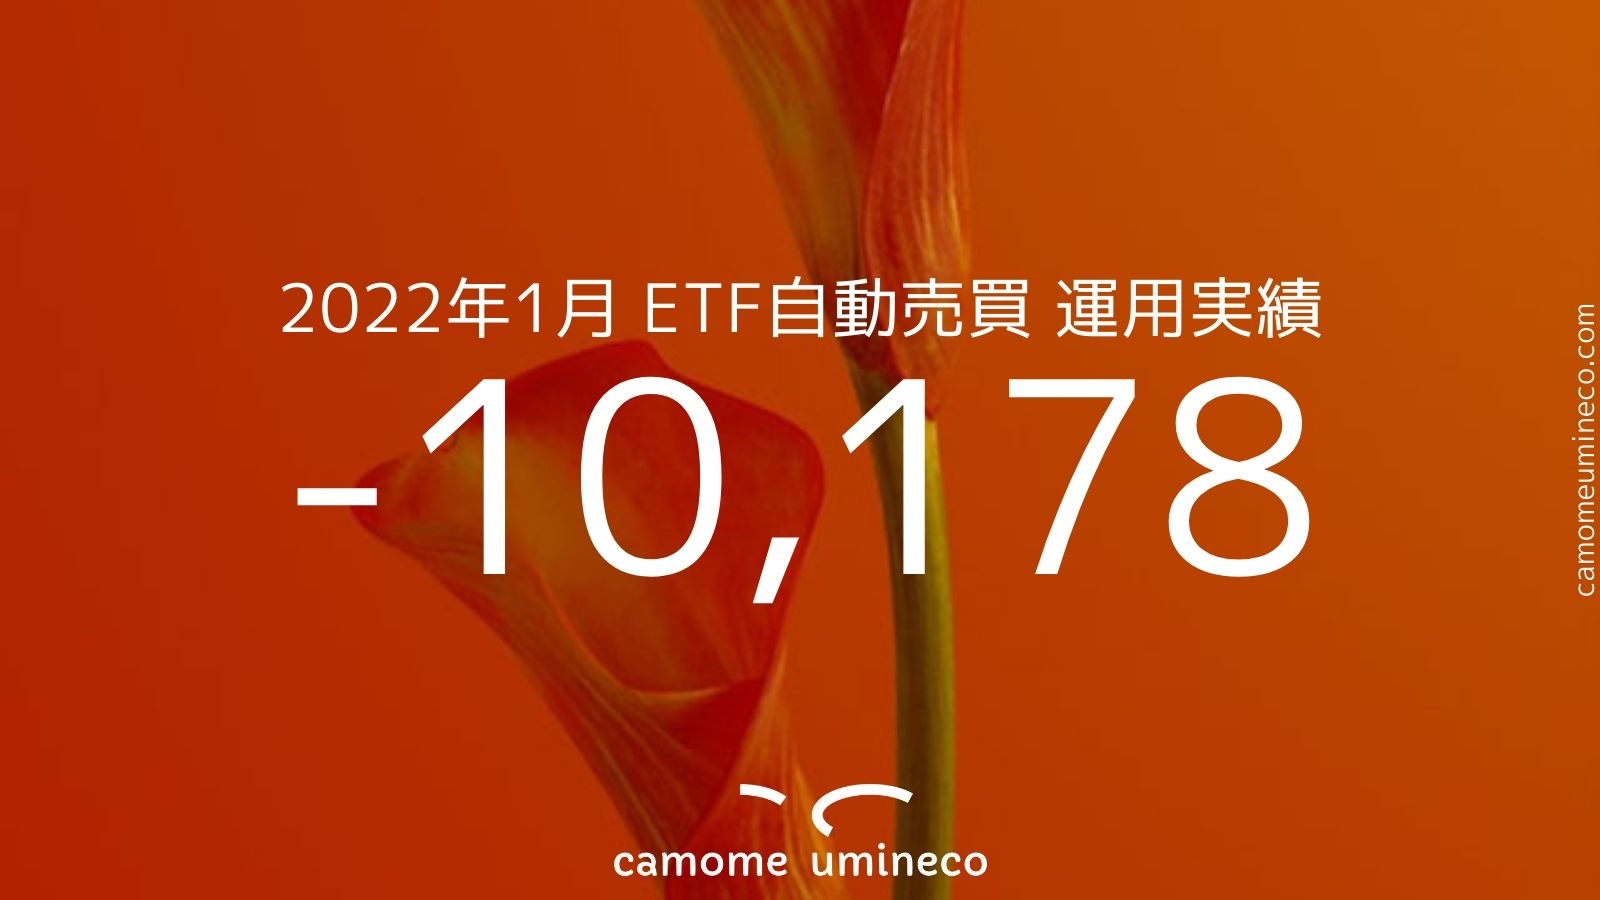 【トライオートETF】2022年1月 運用実績 -10,178円